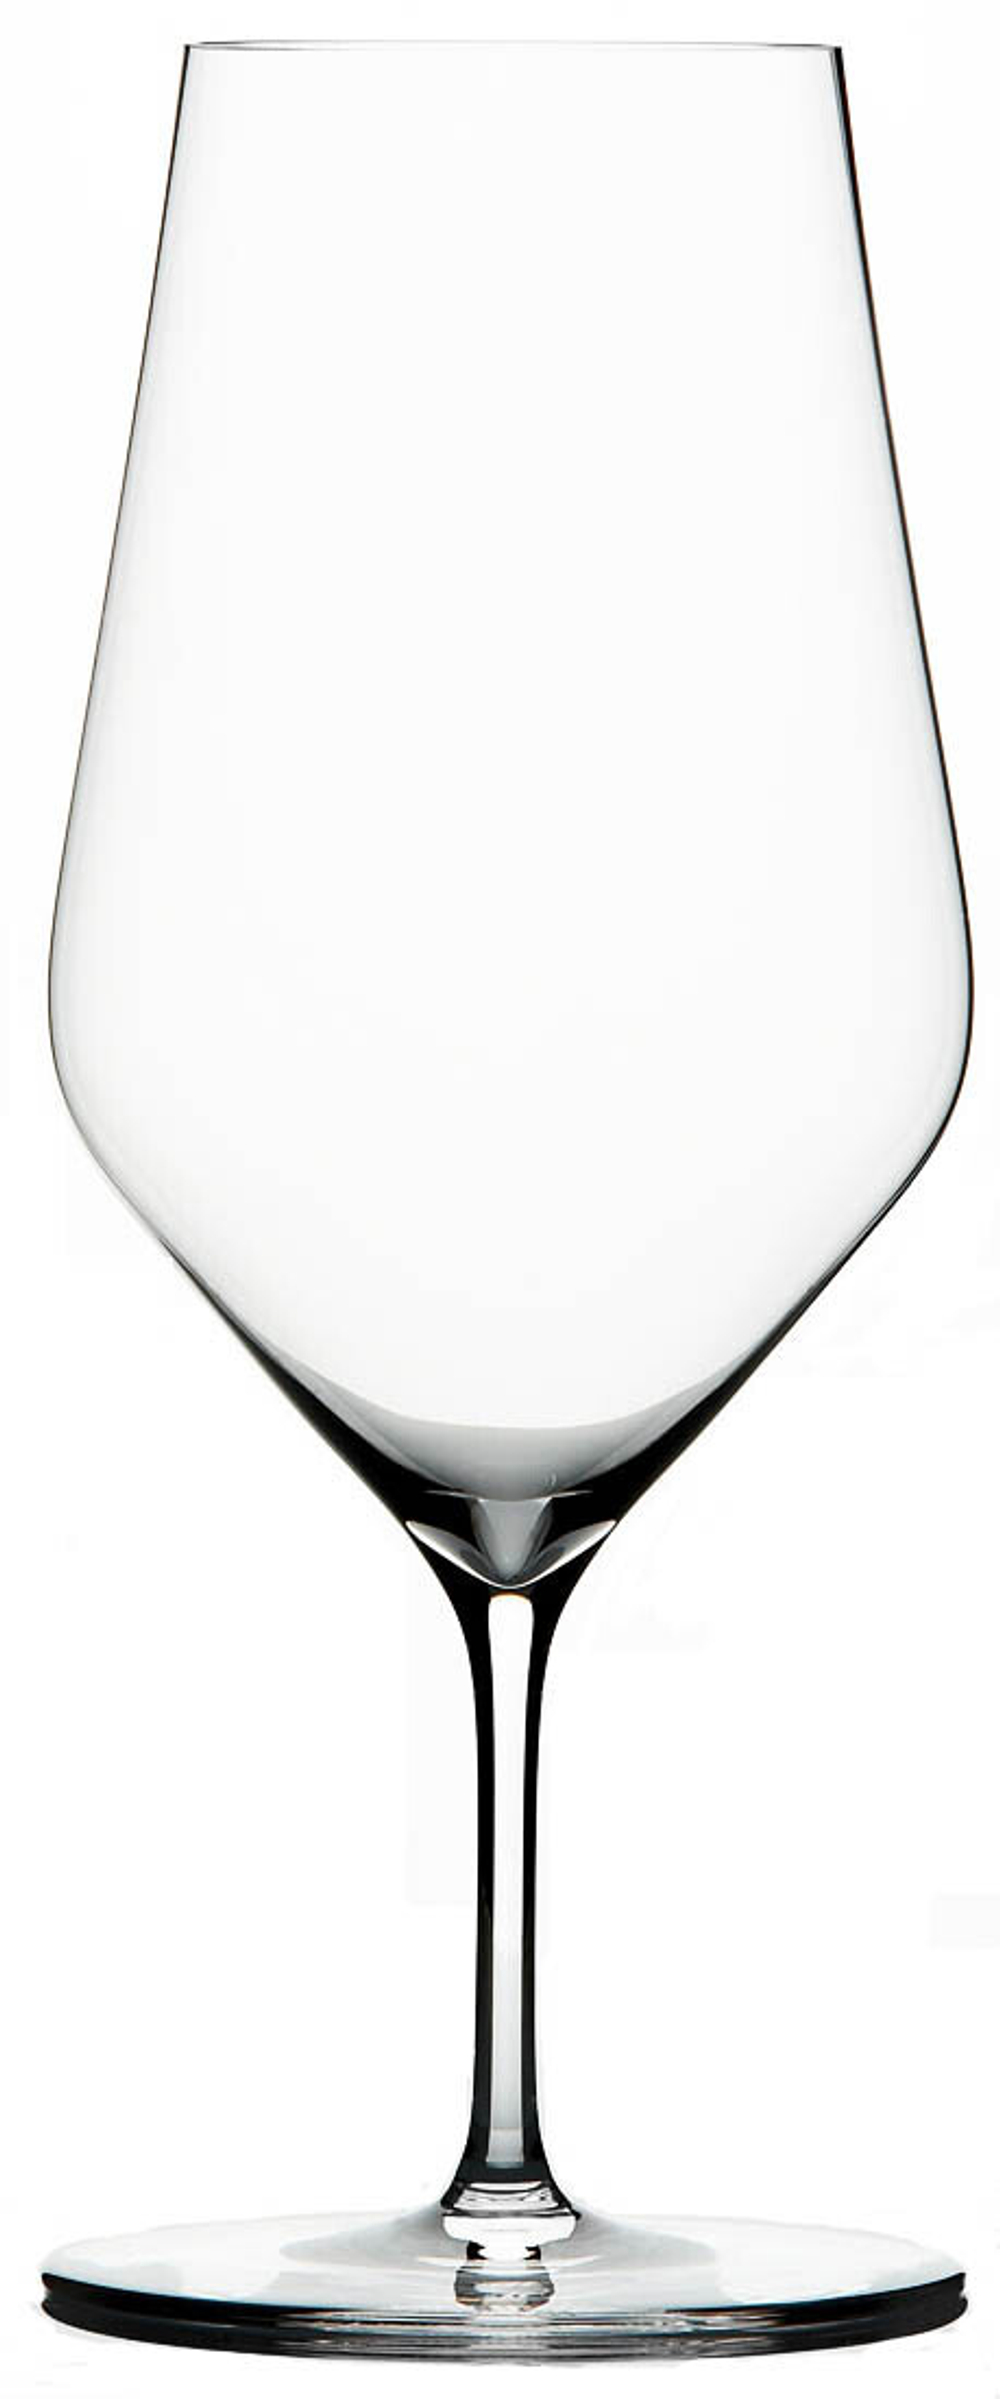 Бокалы Zalto Water set of 6 Glasses, 400 мл